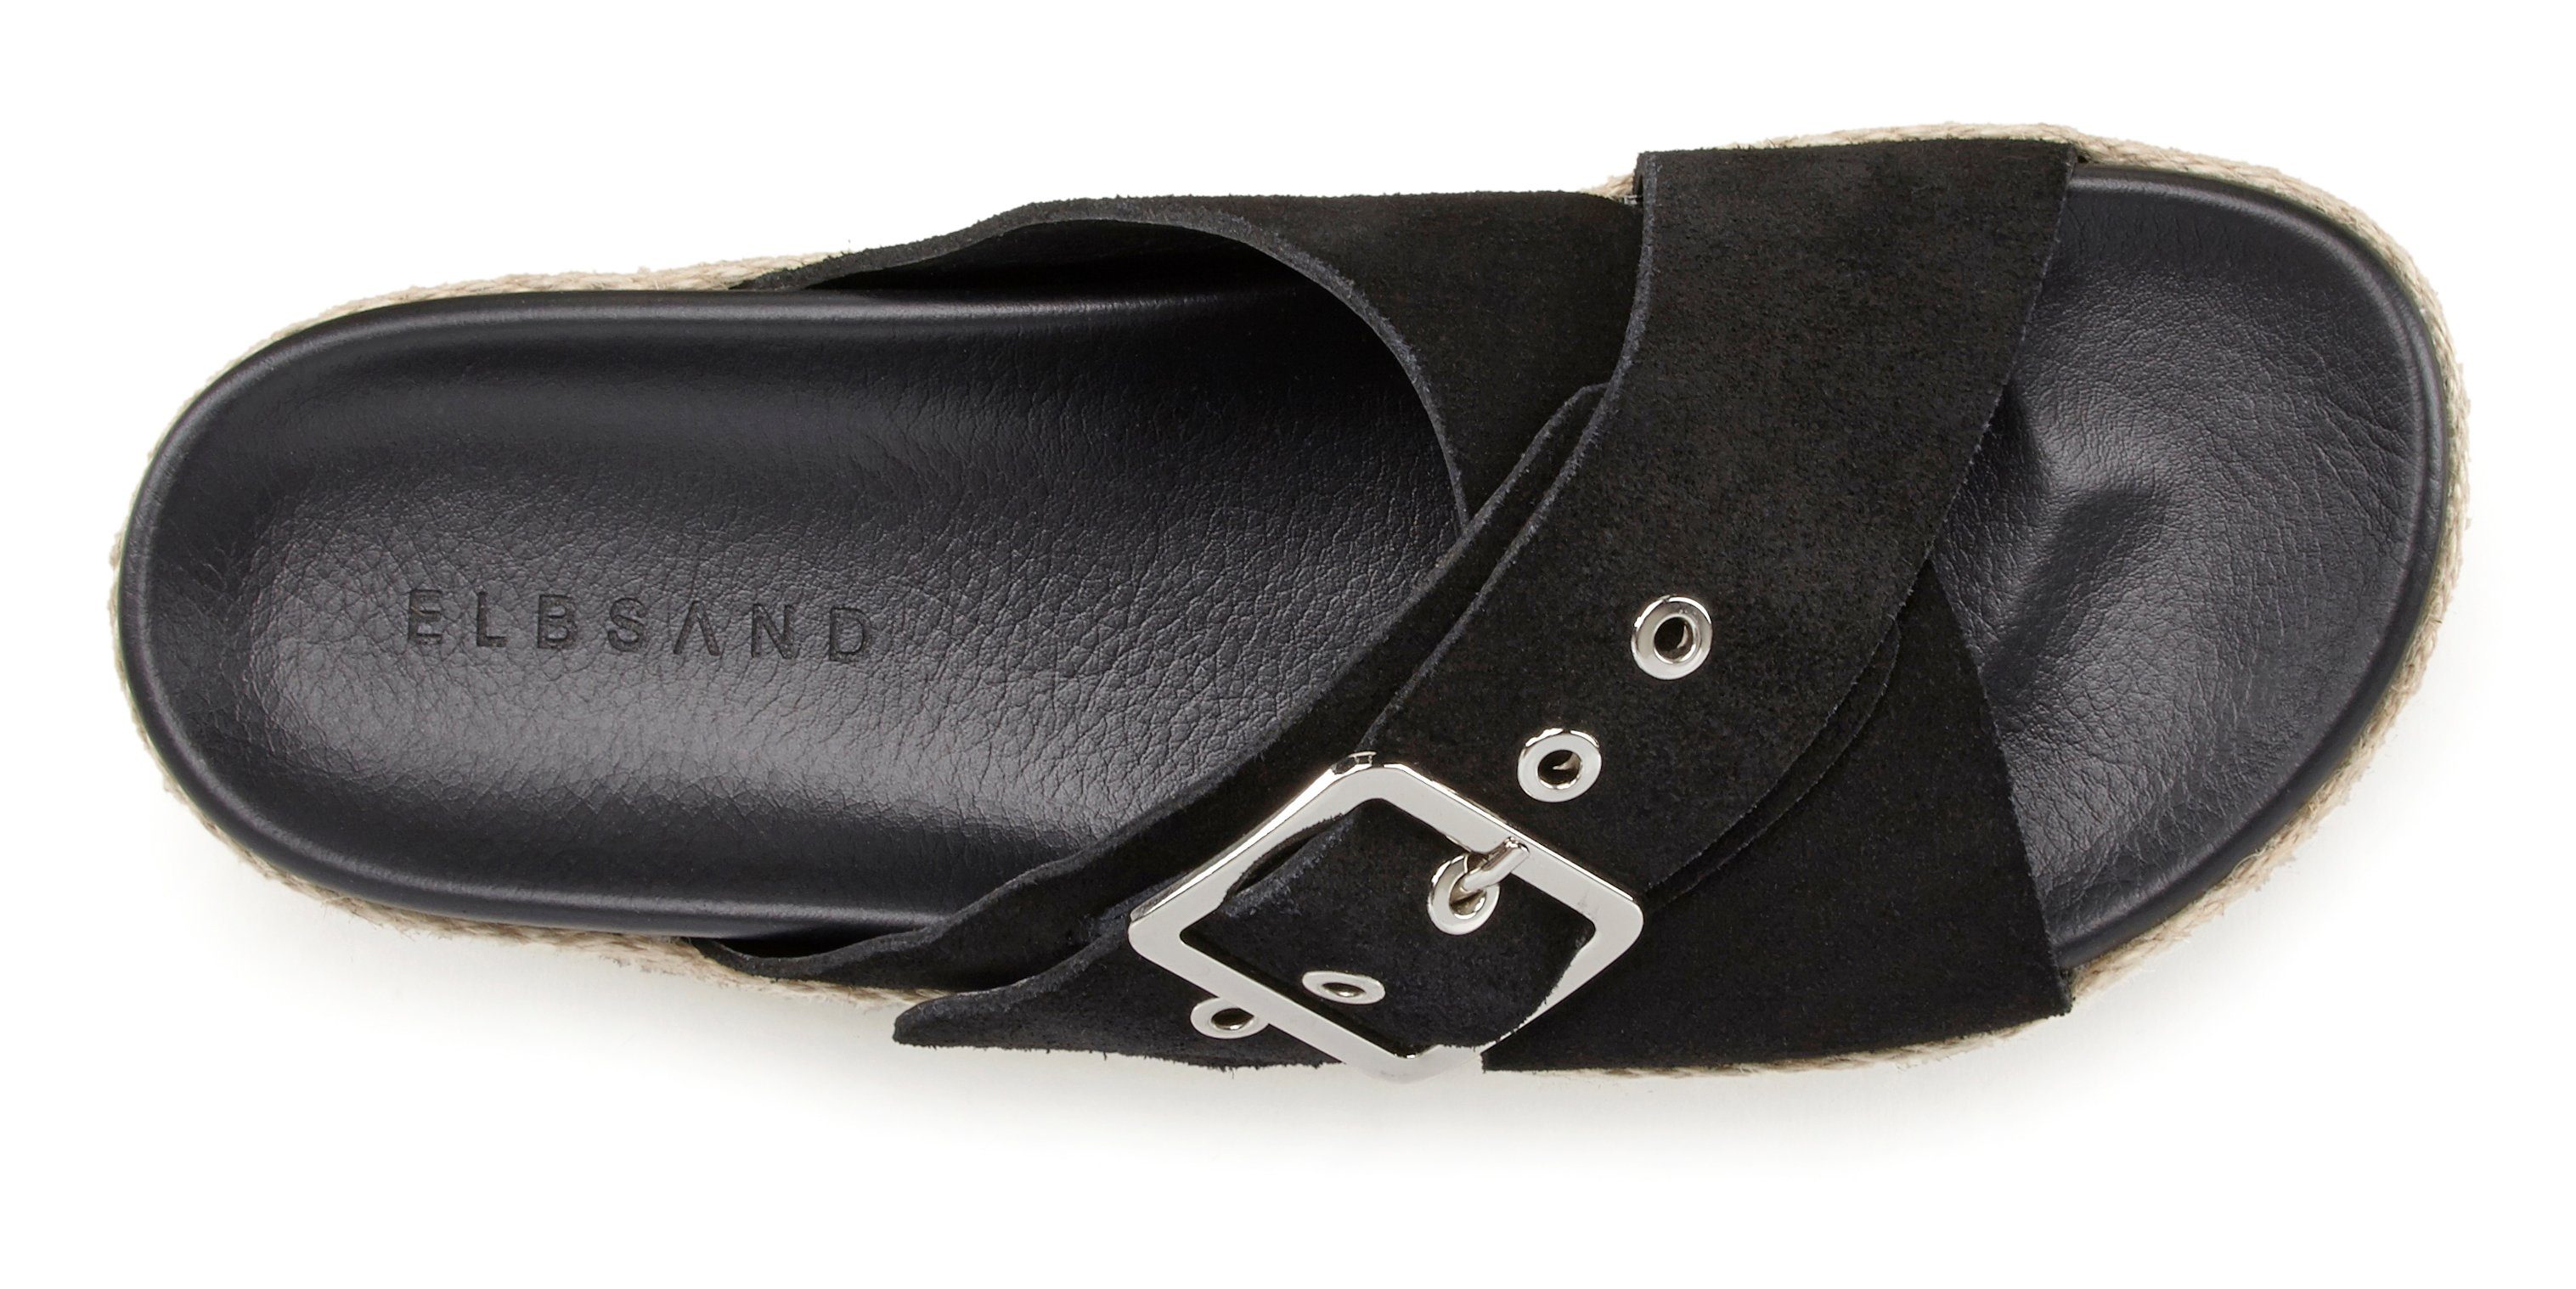 Elbsand Pantolette offener Plateauabsatz Leder Mule, Schuh Sandale, mit aus